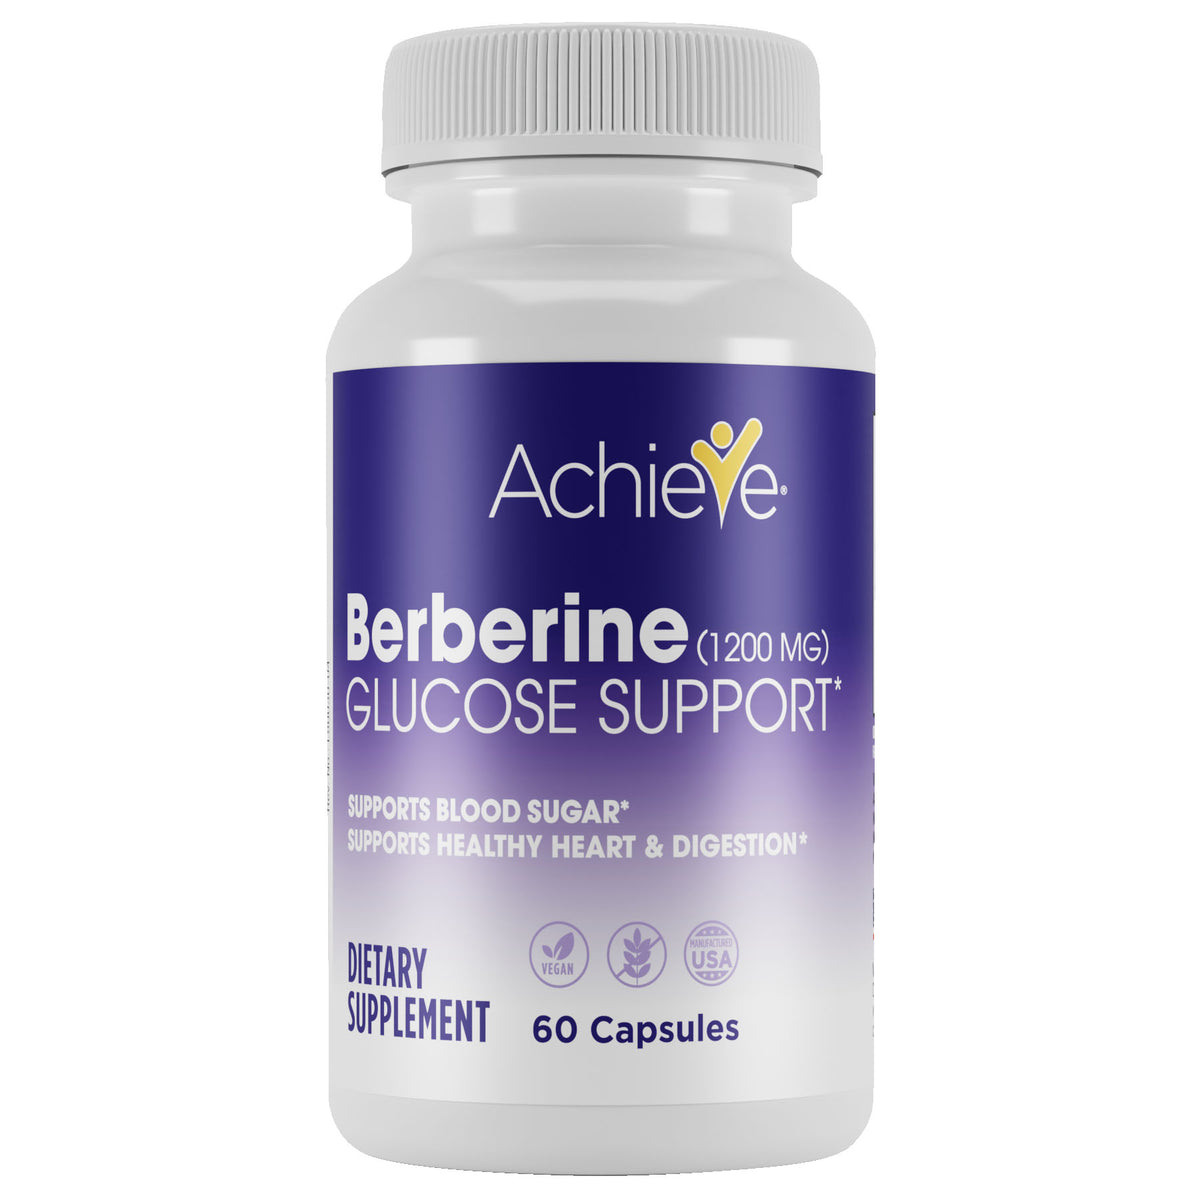 Achieve Berberine Glucose Support